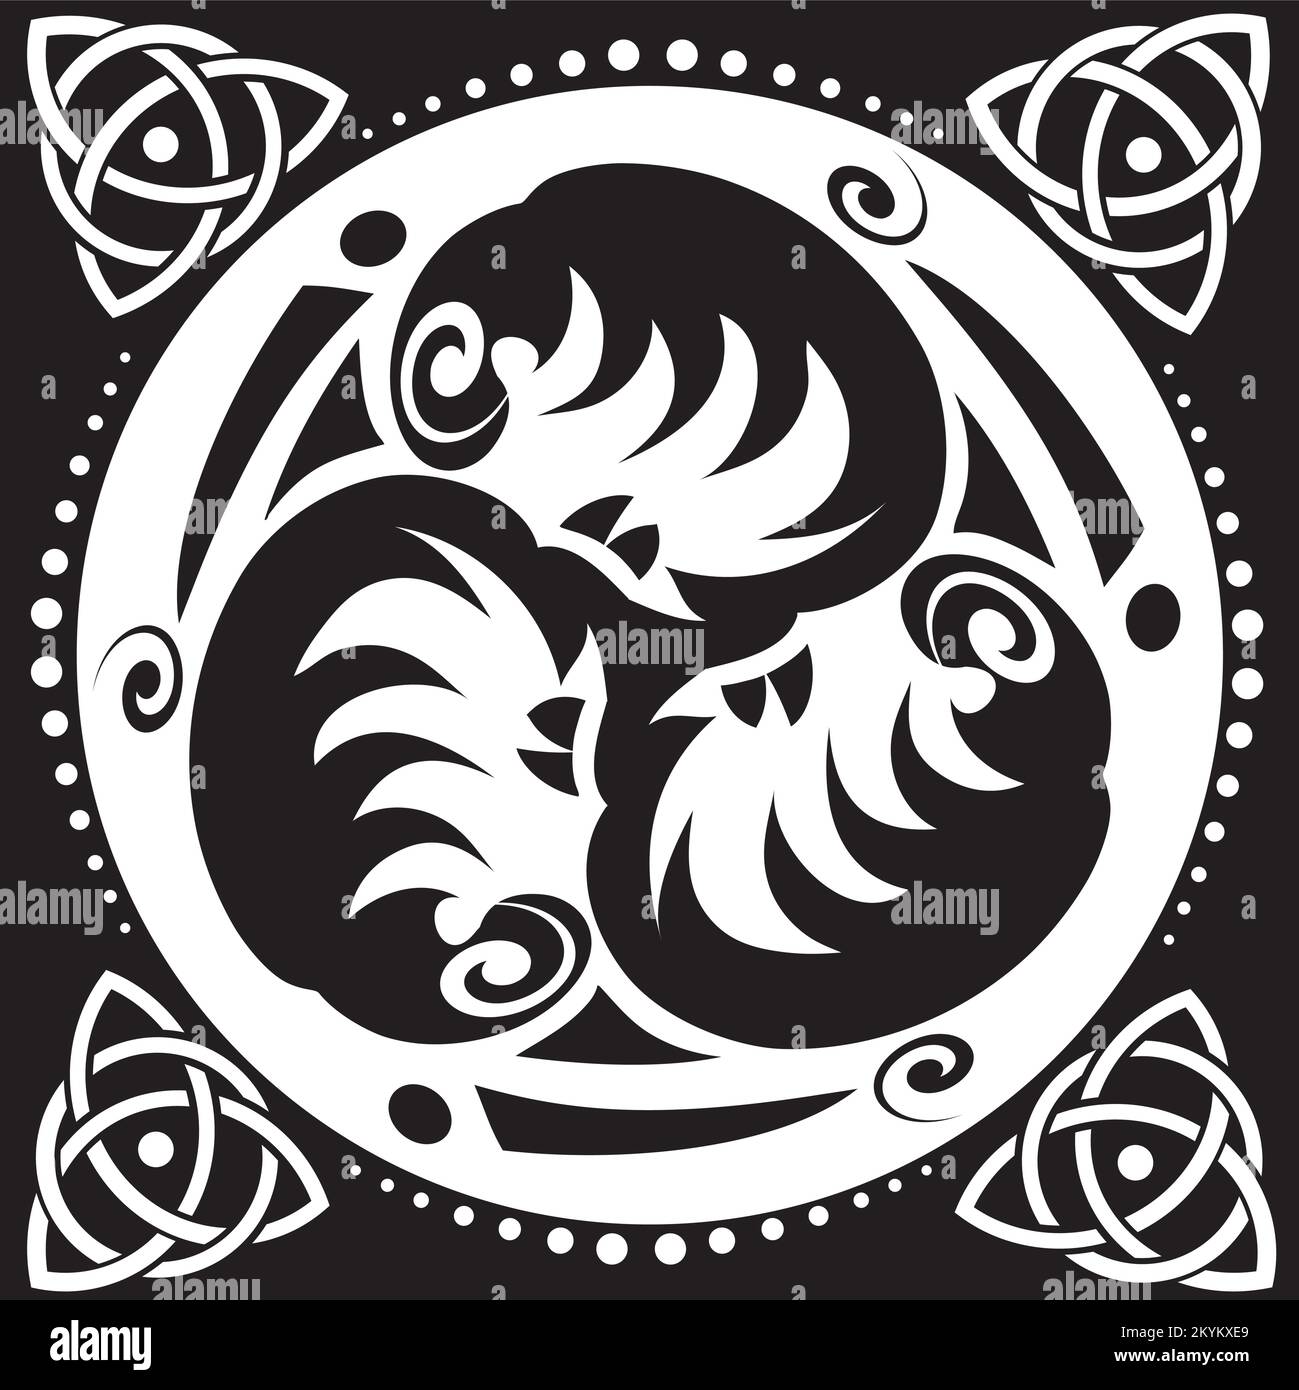 Symbole celtique - cercle de Knot et de Triskelion celtique - Trinité - géométrie sacrée - énergie Illustration de Vecteur